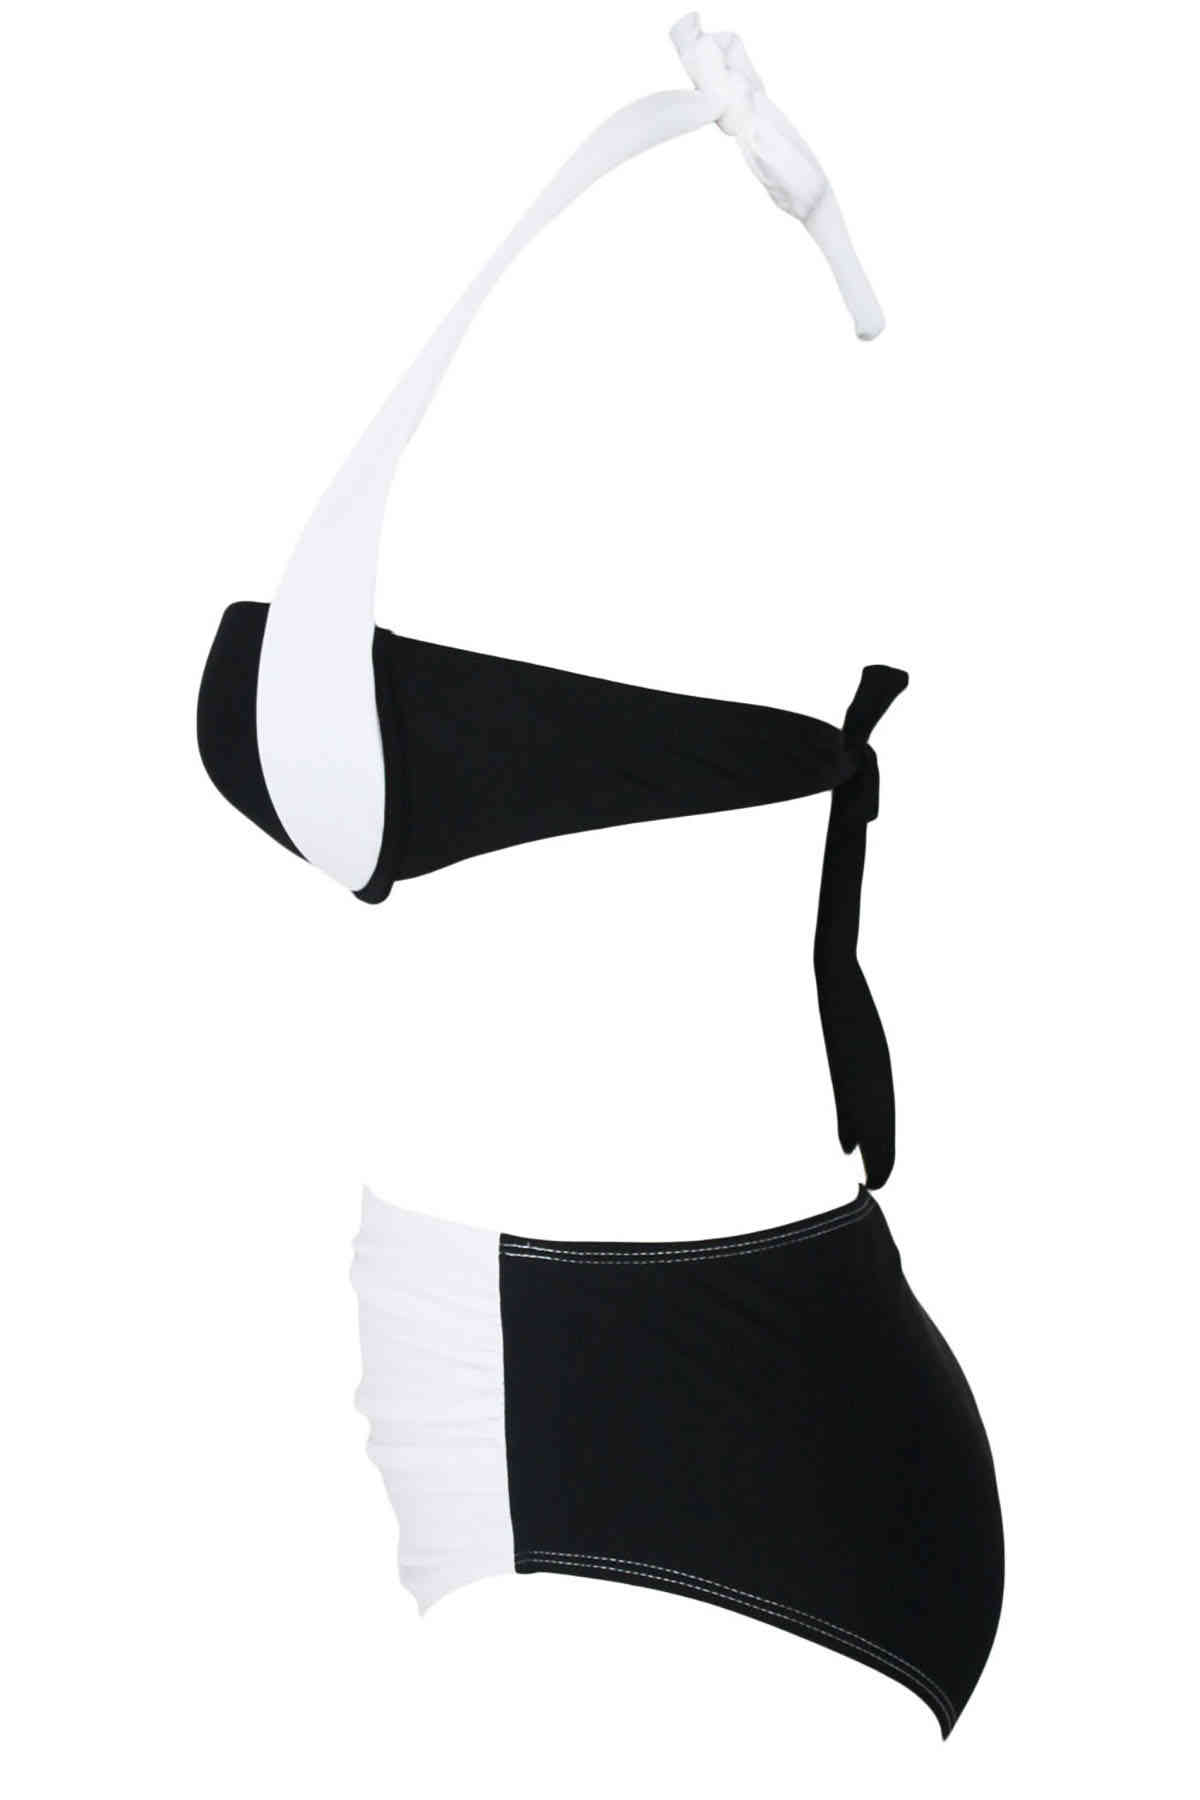 angelsin kapli siyah beyaz sik tasarimli bikini bikini takm angelsin 11080 16 B